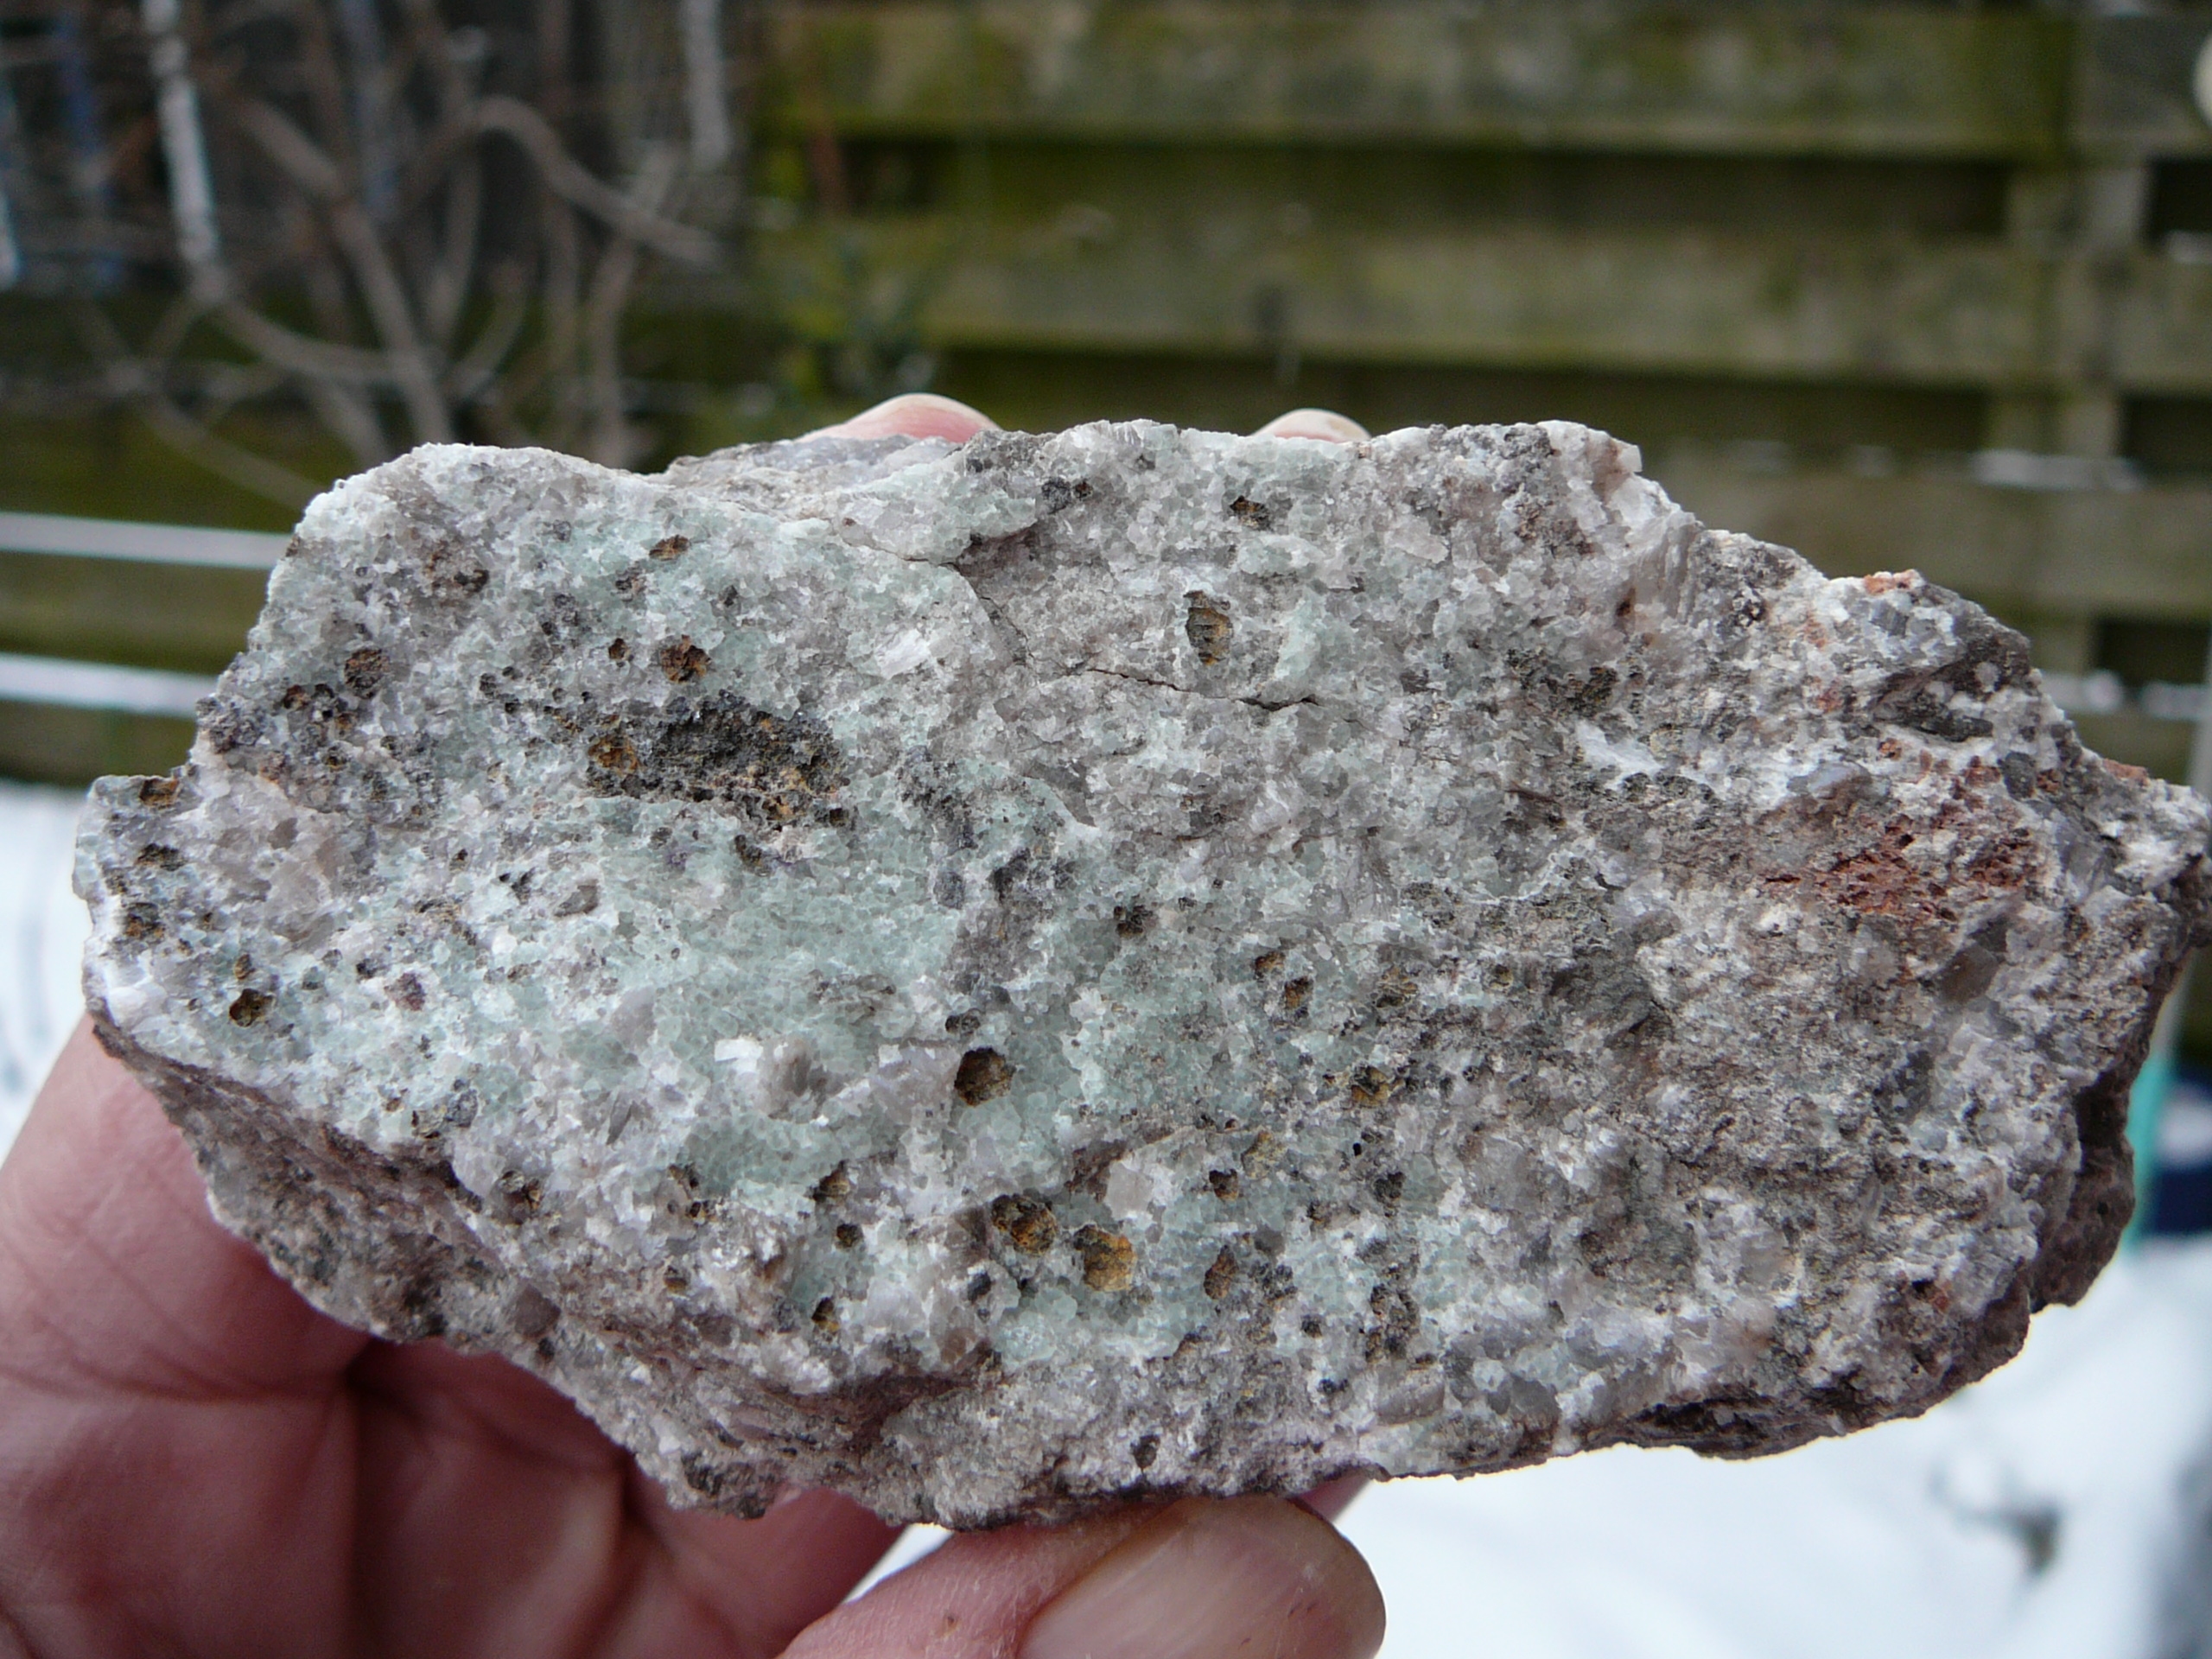 Fluorite with willemite, calcite, caliche